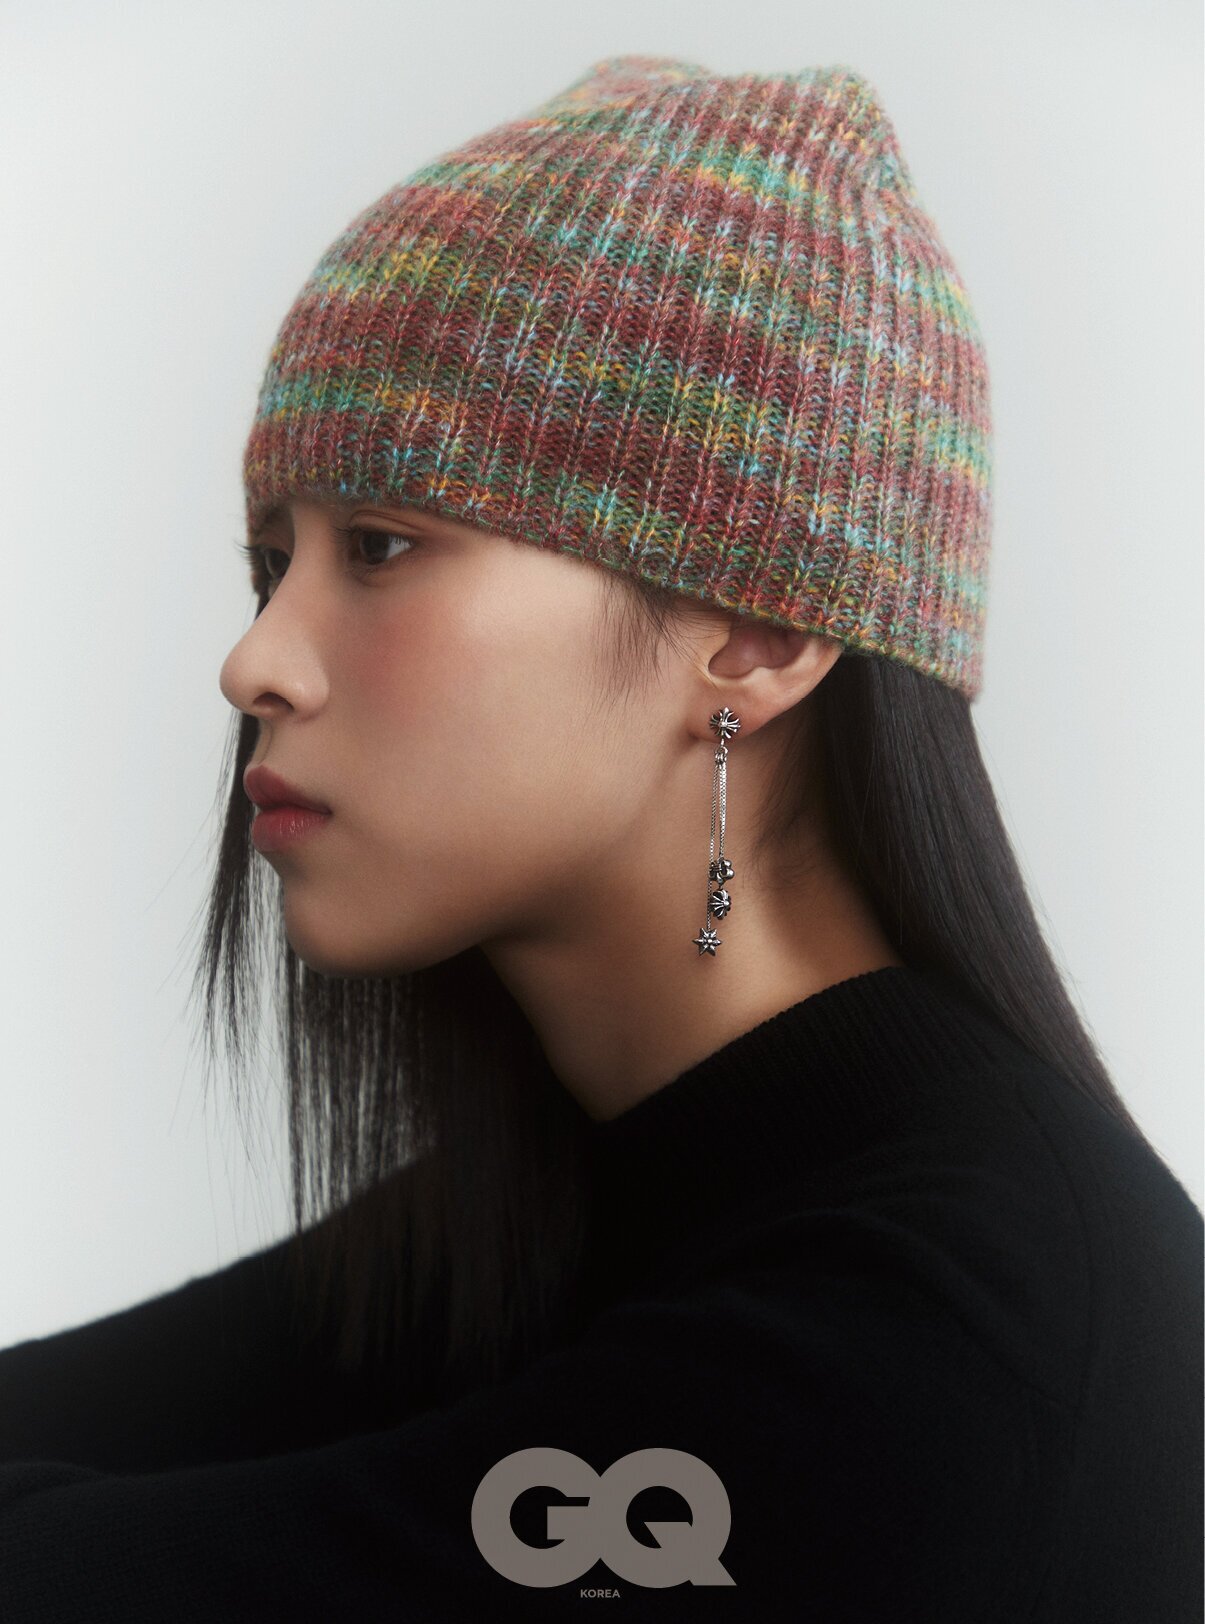 A Hat In Time - 010056E00853A000 · Issue #575 · Ryujinx/Ryujinx